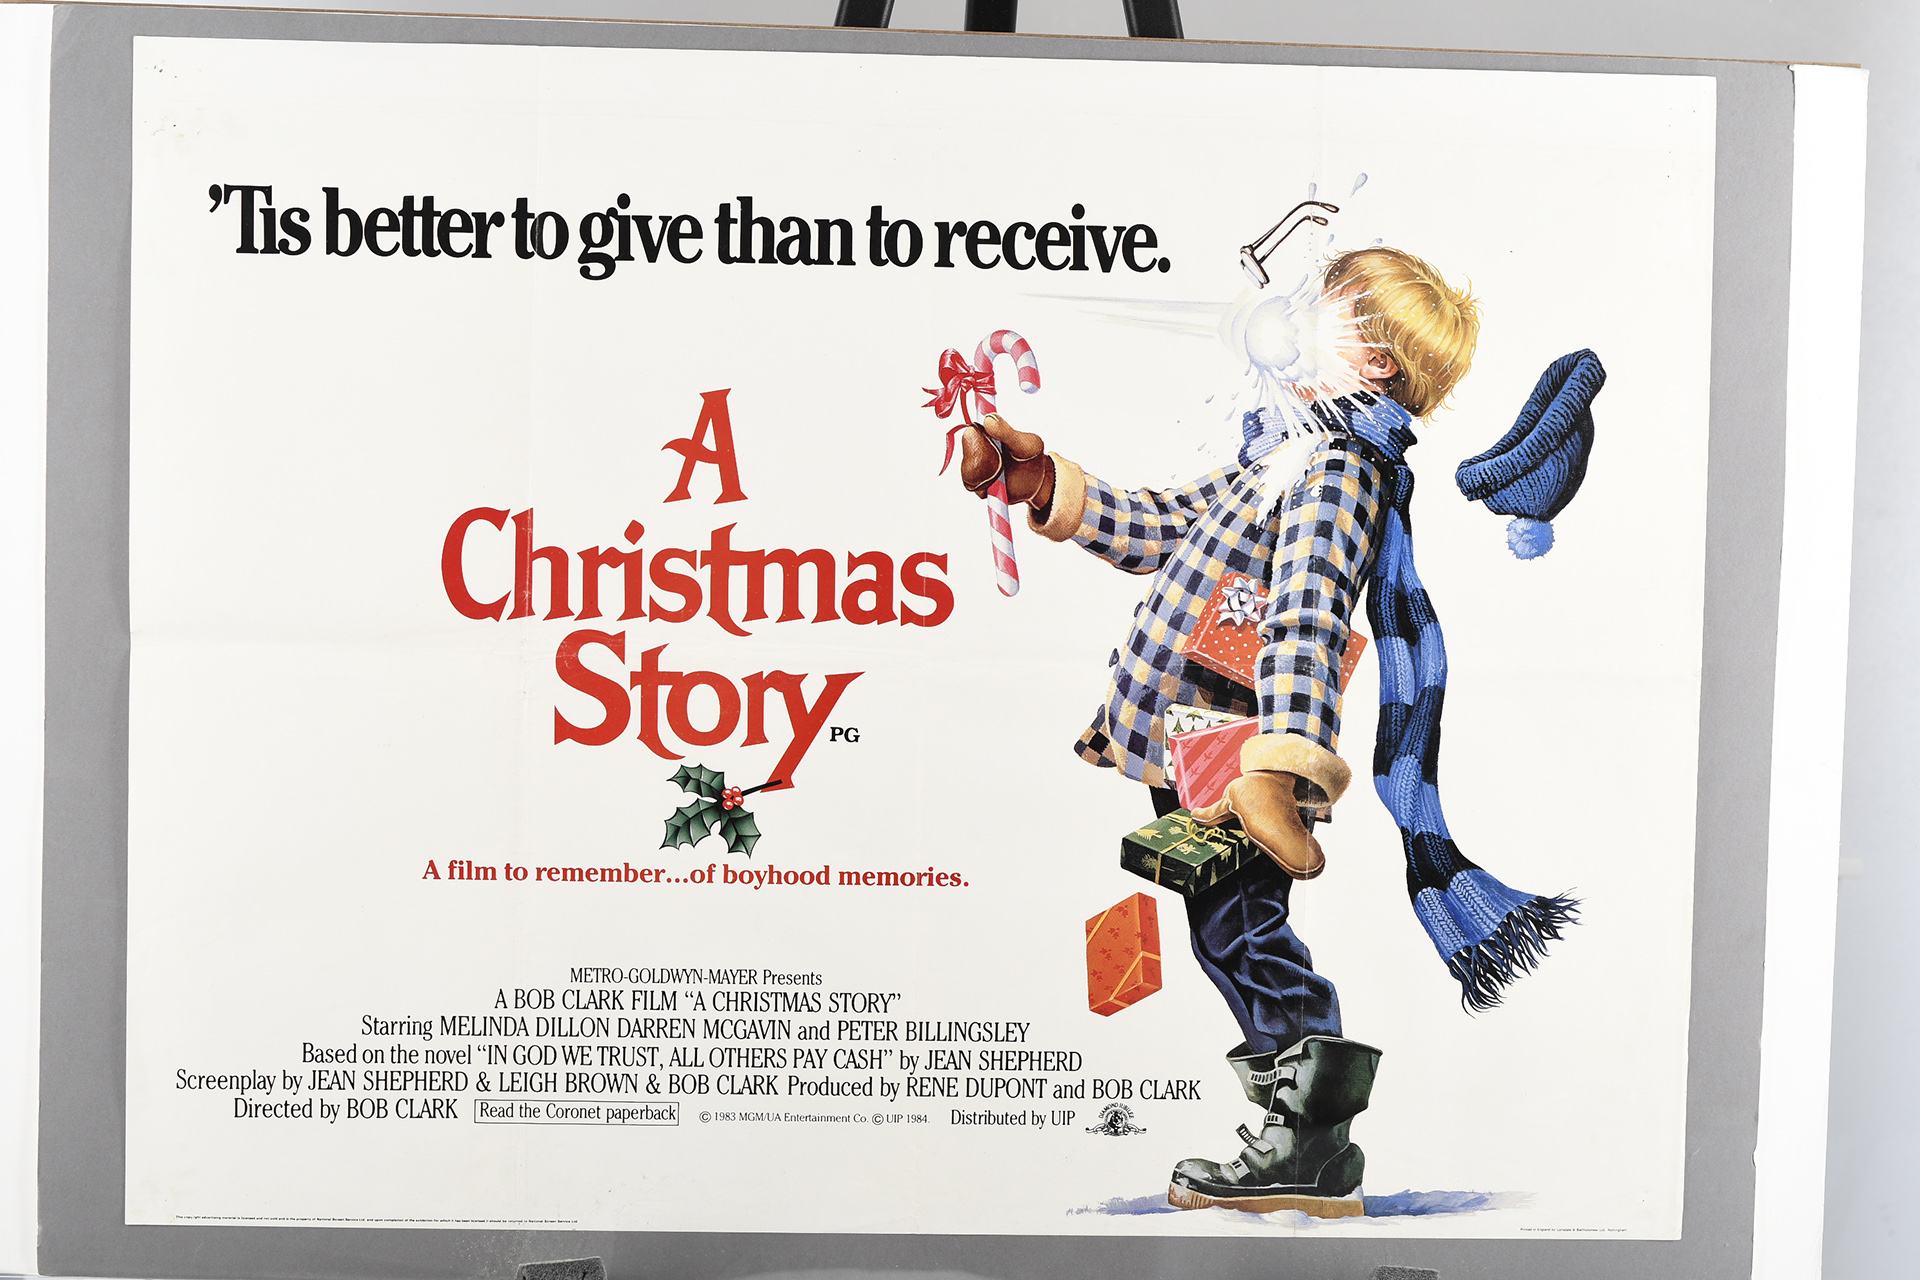 Original "A Christmas Story" Cinema Poster